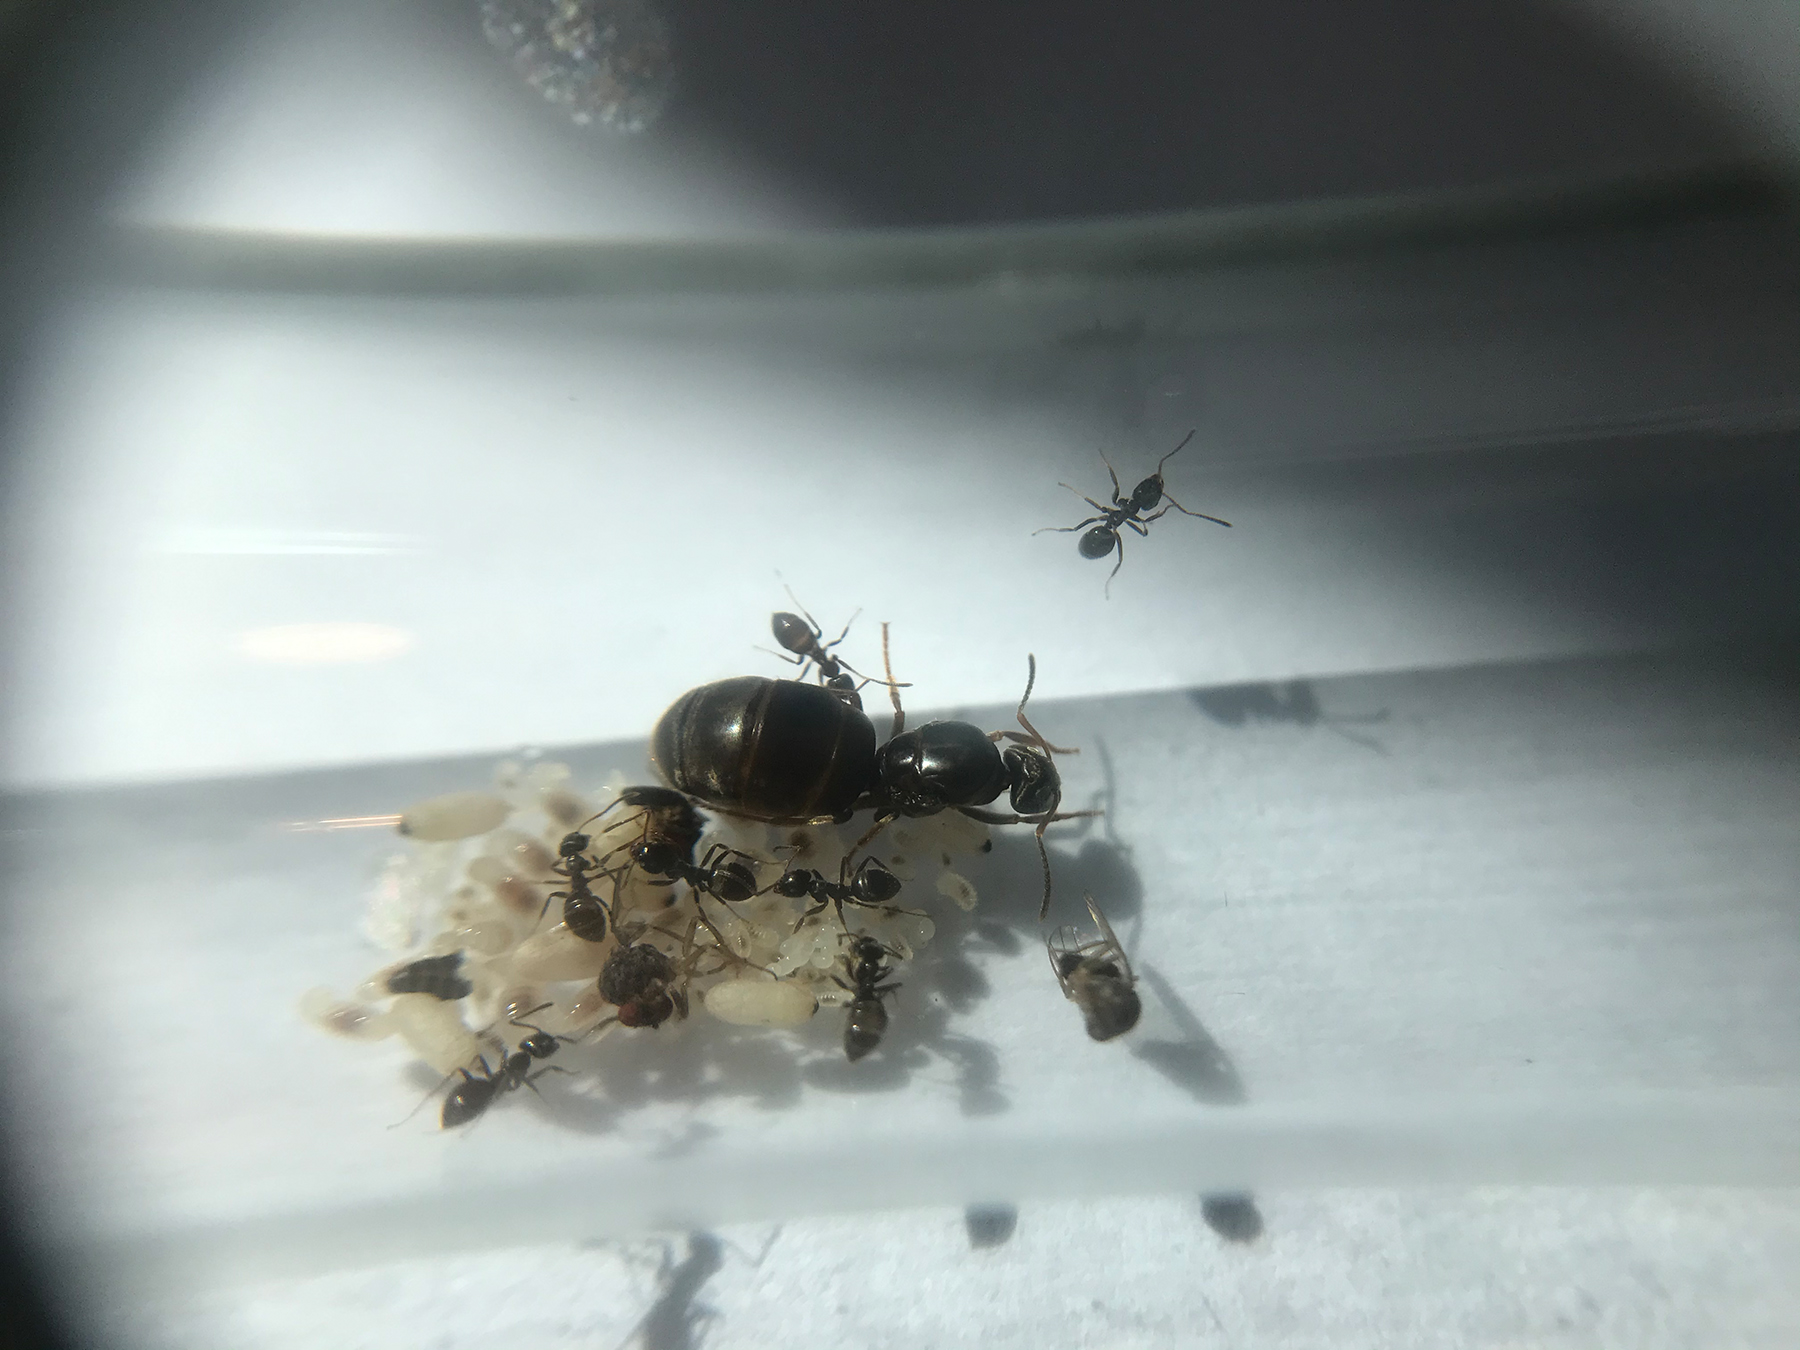 Junge Kolonie der Schwarzen Gartenameise (Lasius niger) mit Königin, Arbeiterinnen und Brut (Eier, Larven und Puppen) in einem Neströhrchen.